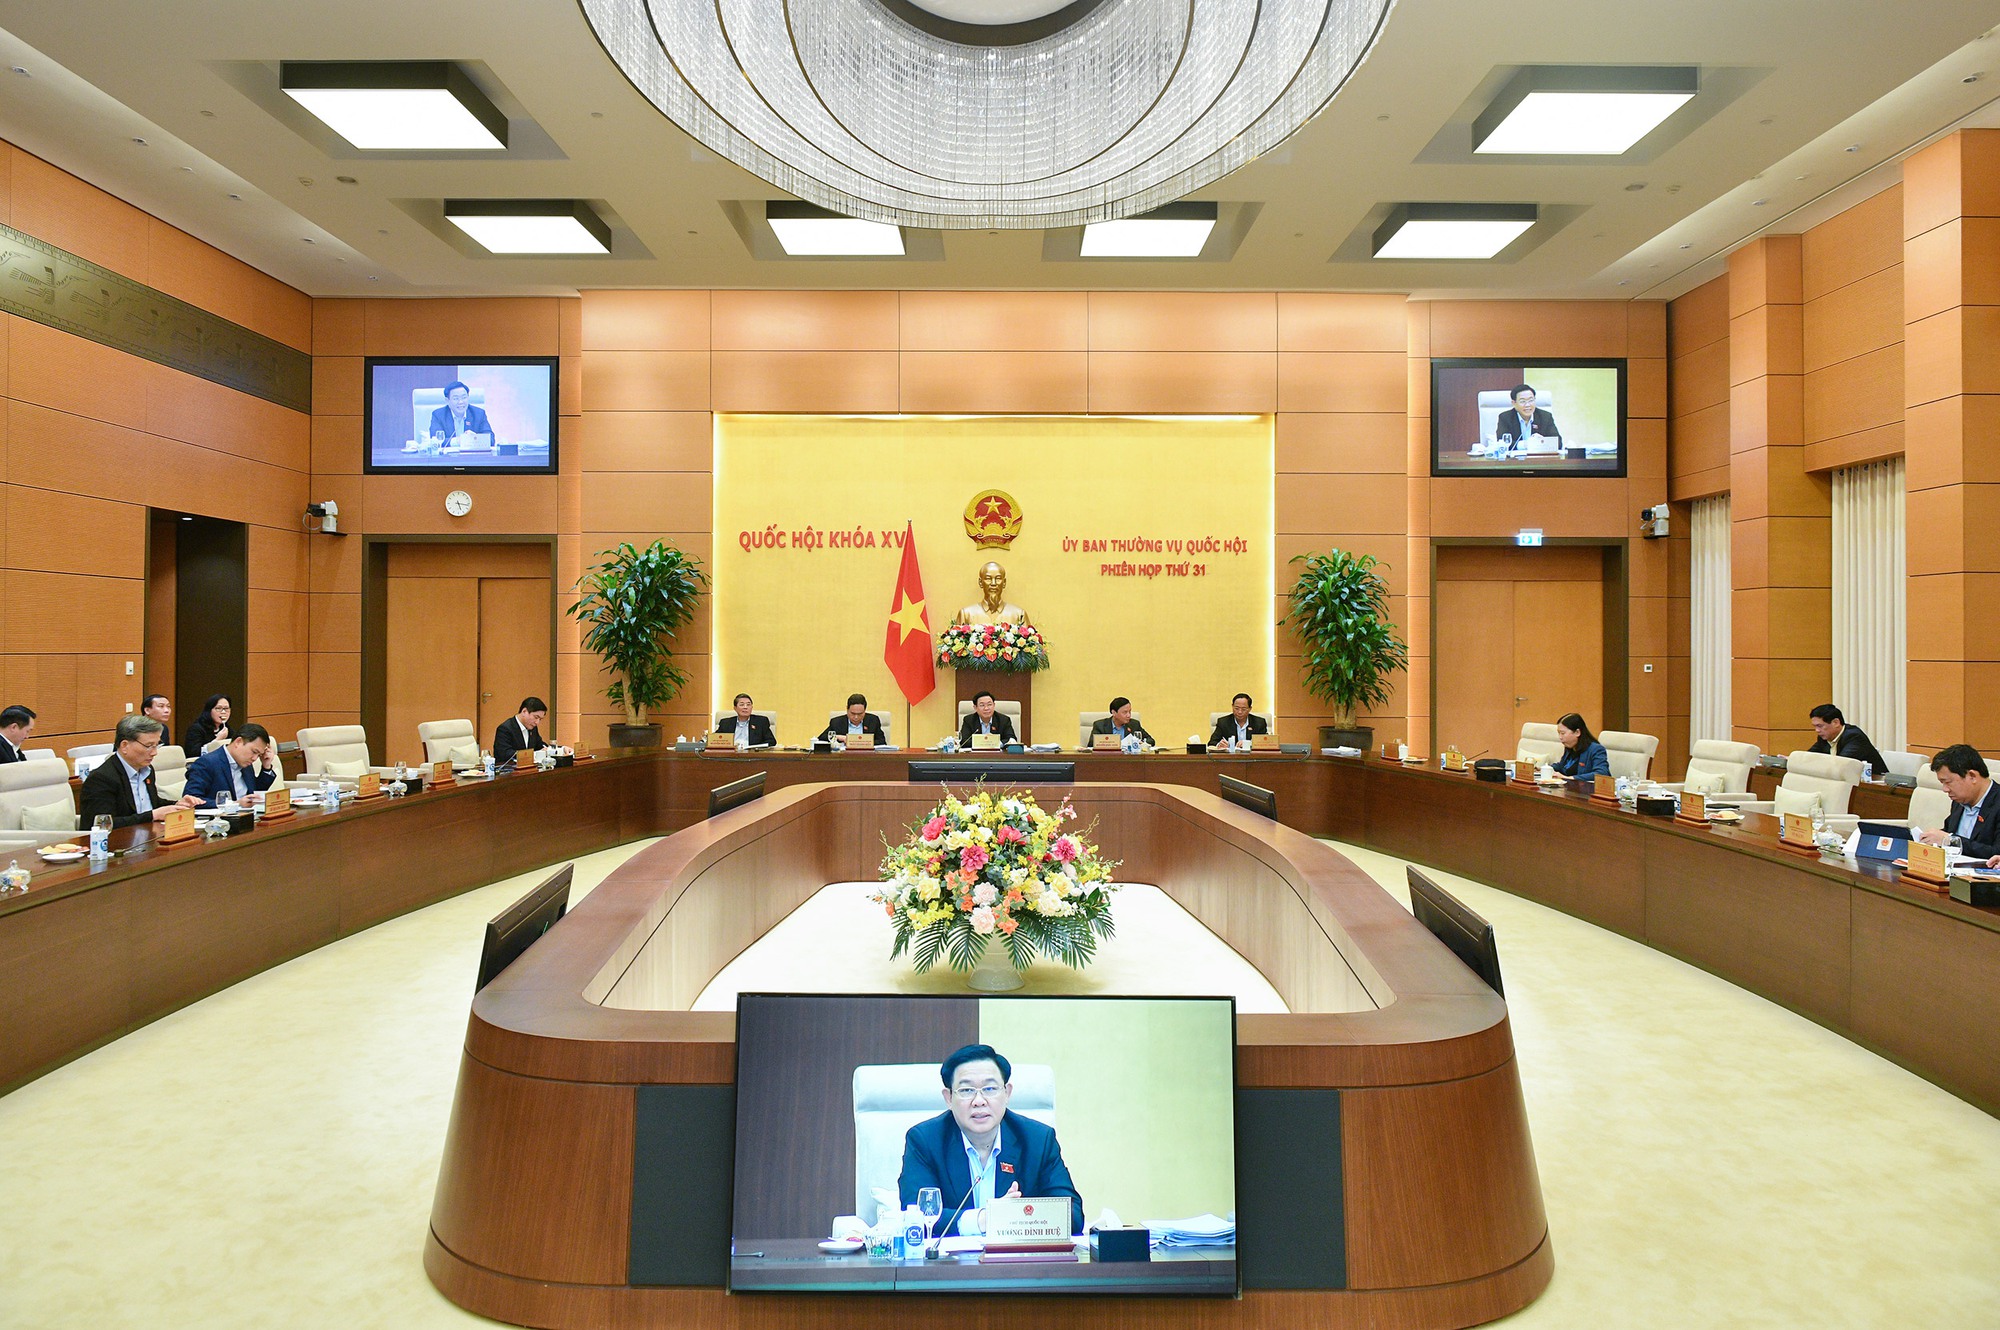 Chất vấn Bộ trưởng Bùi Thanh Sơn công tác bảo hộ công dân; sắp xếp, kiện toàn bộ máy ngoại giao- Ảnh 3.